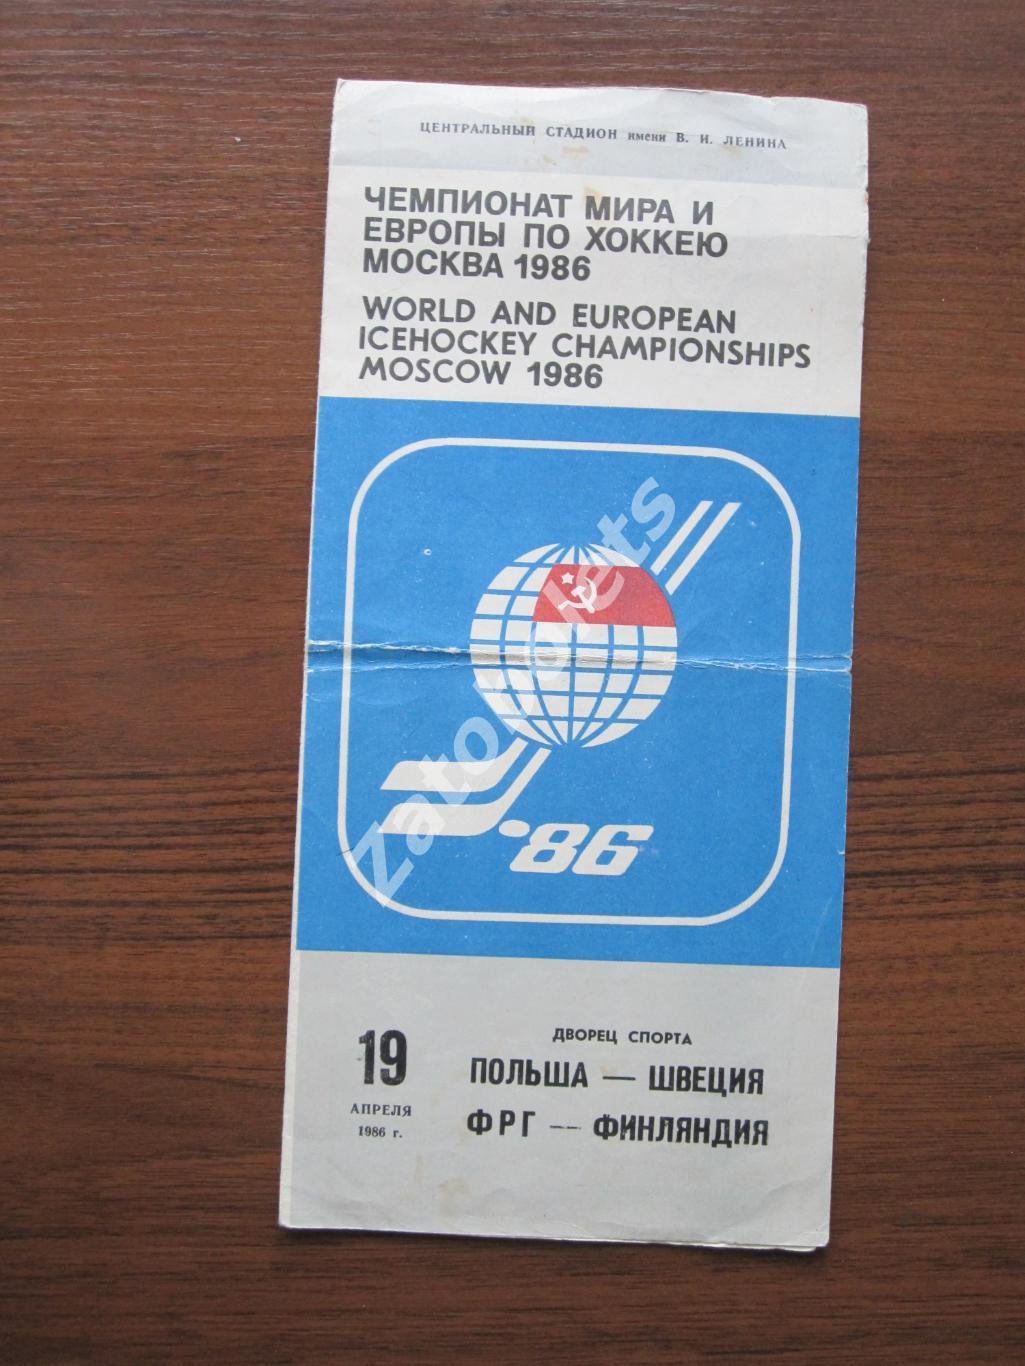 Польша - Швеция/ФРГ - Финляндия 19.04.1986 Чемпионат Мира и Европы